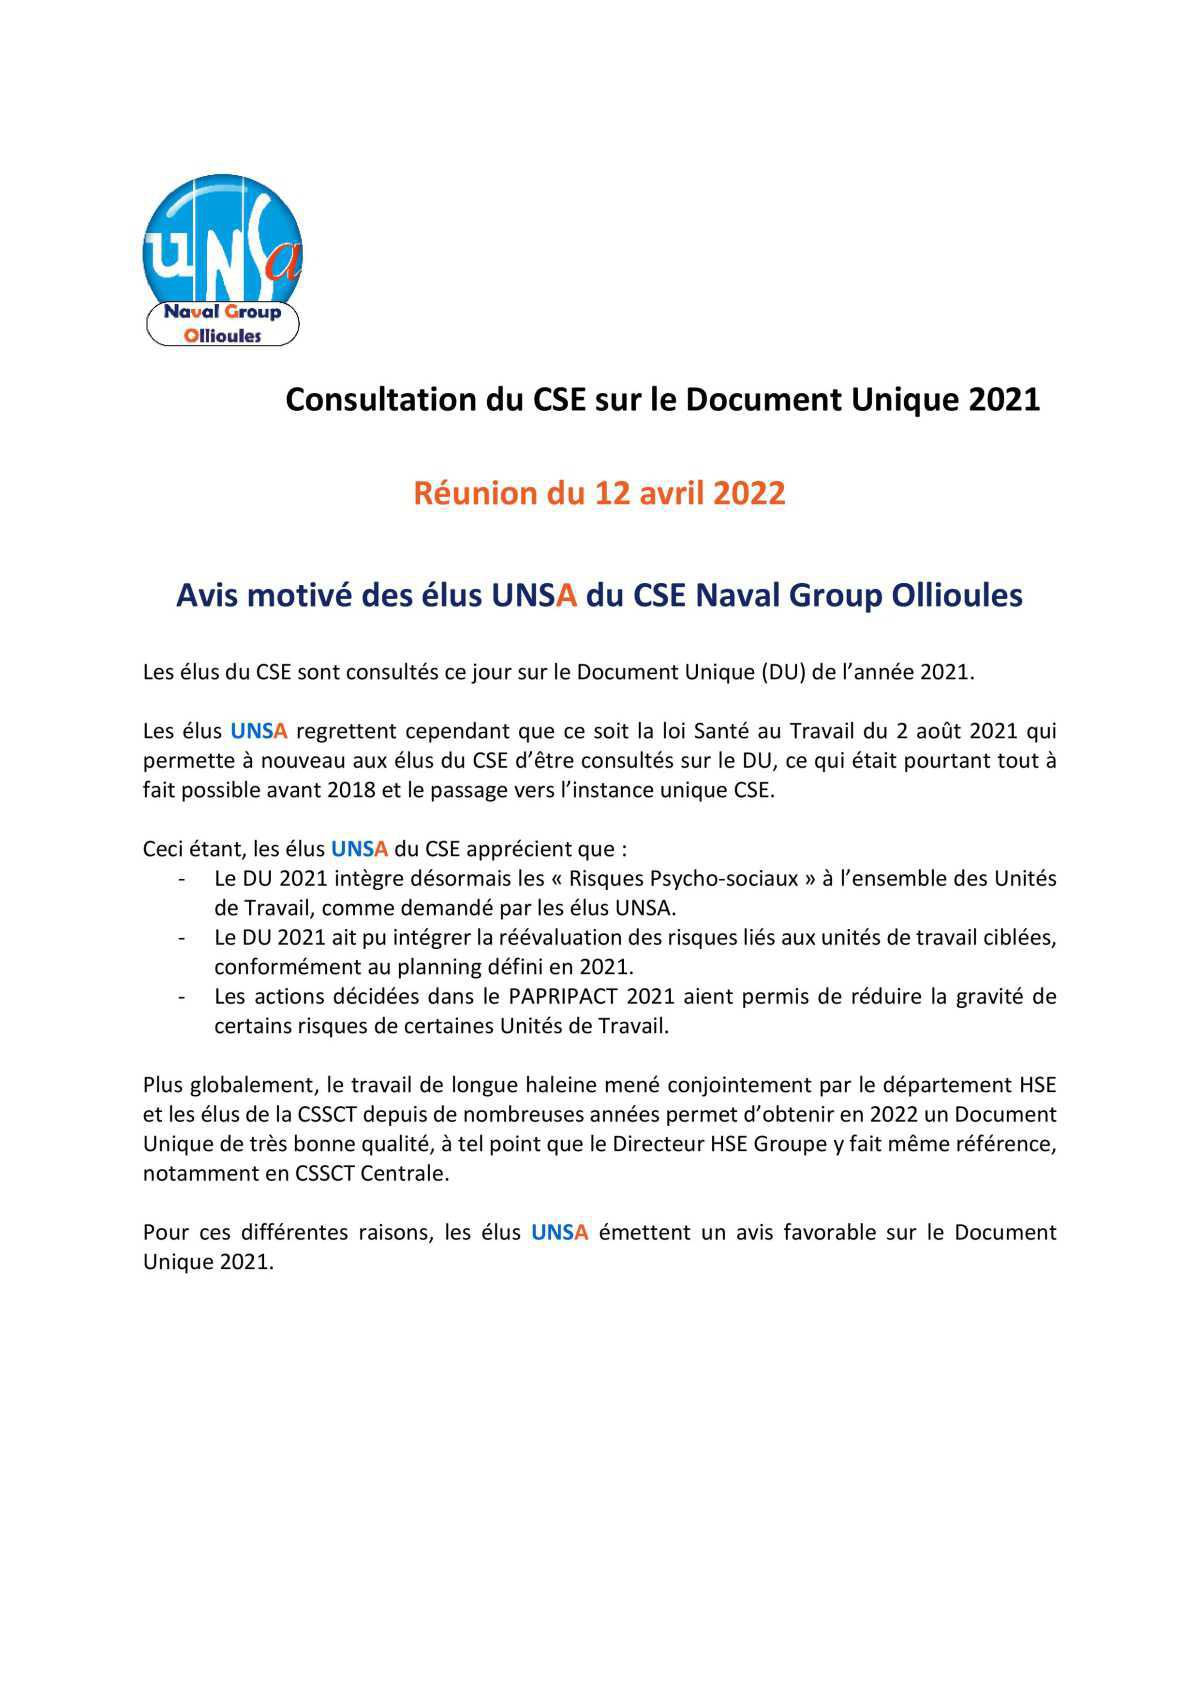 CSE d'Ollioules - réunion du 12 avril 2022 : consultation sur les sujets SST - avis des élus UNSA